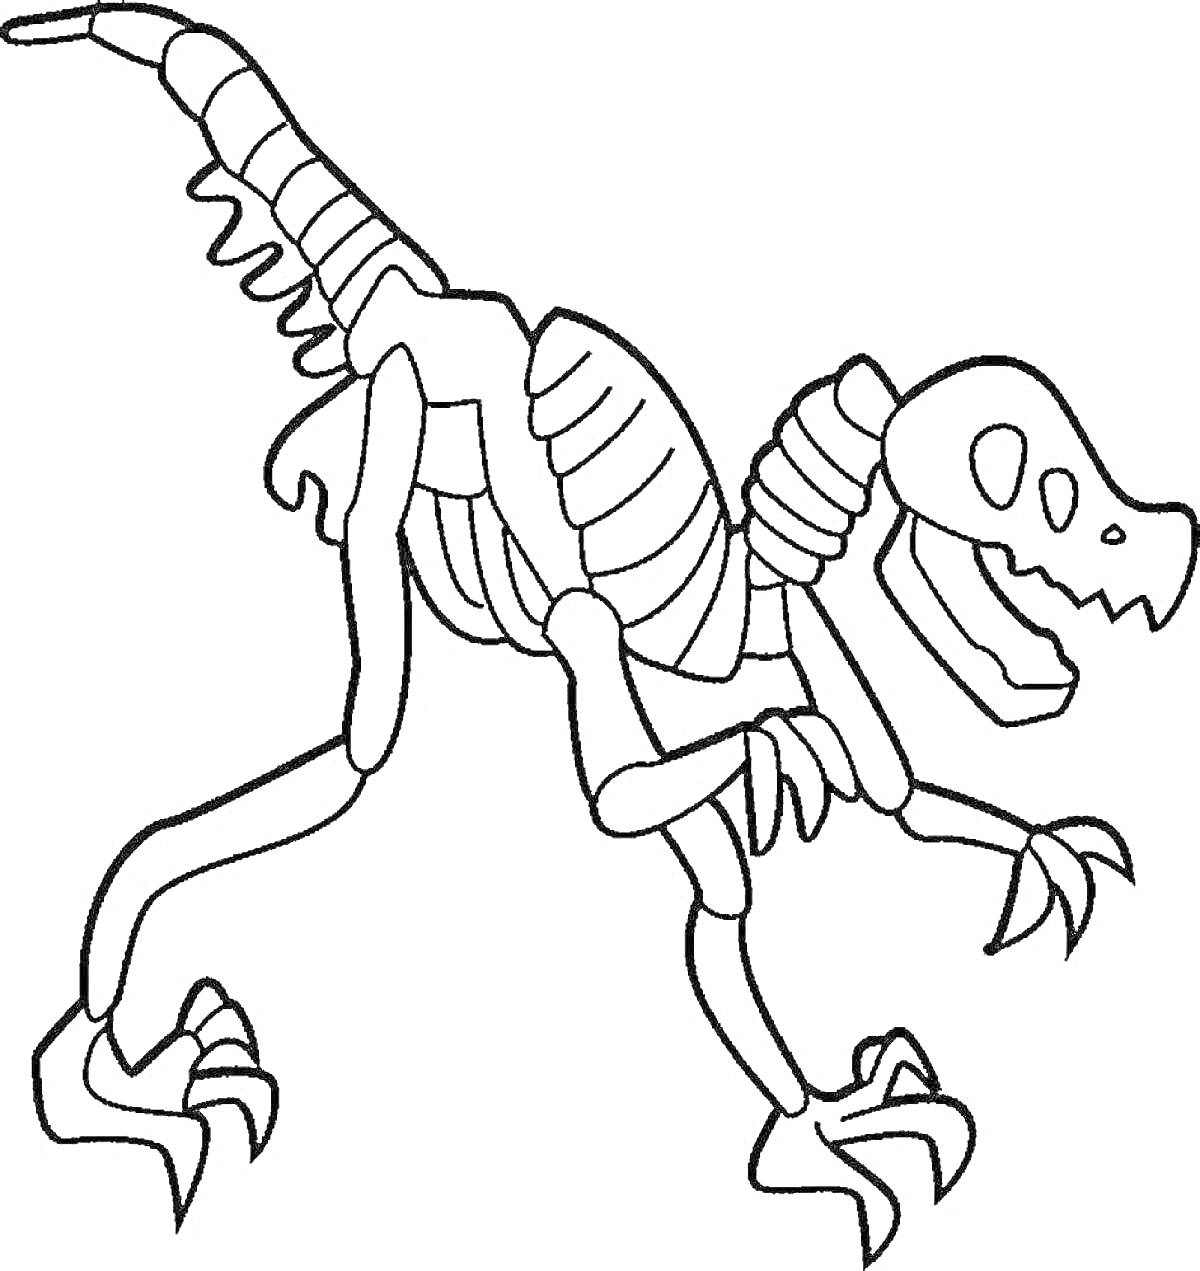 Раскраска Раскраска скелета динозавра с когтями и хребтом